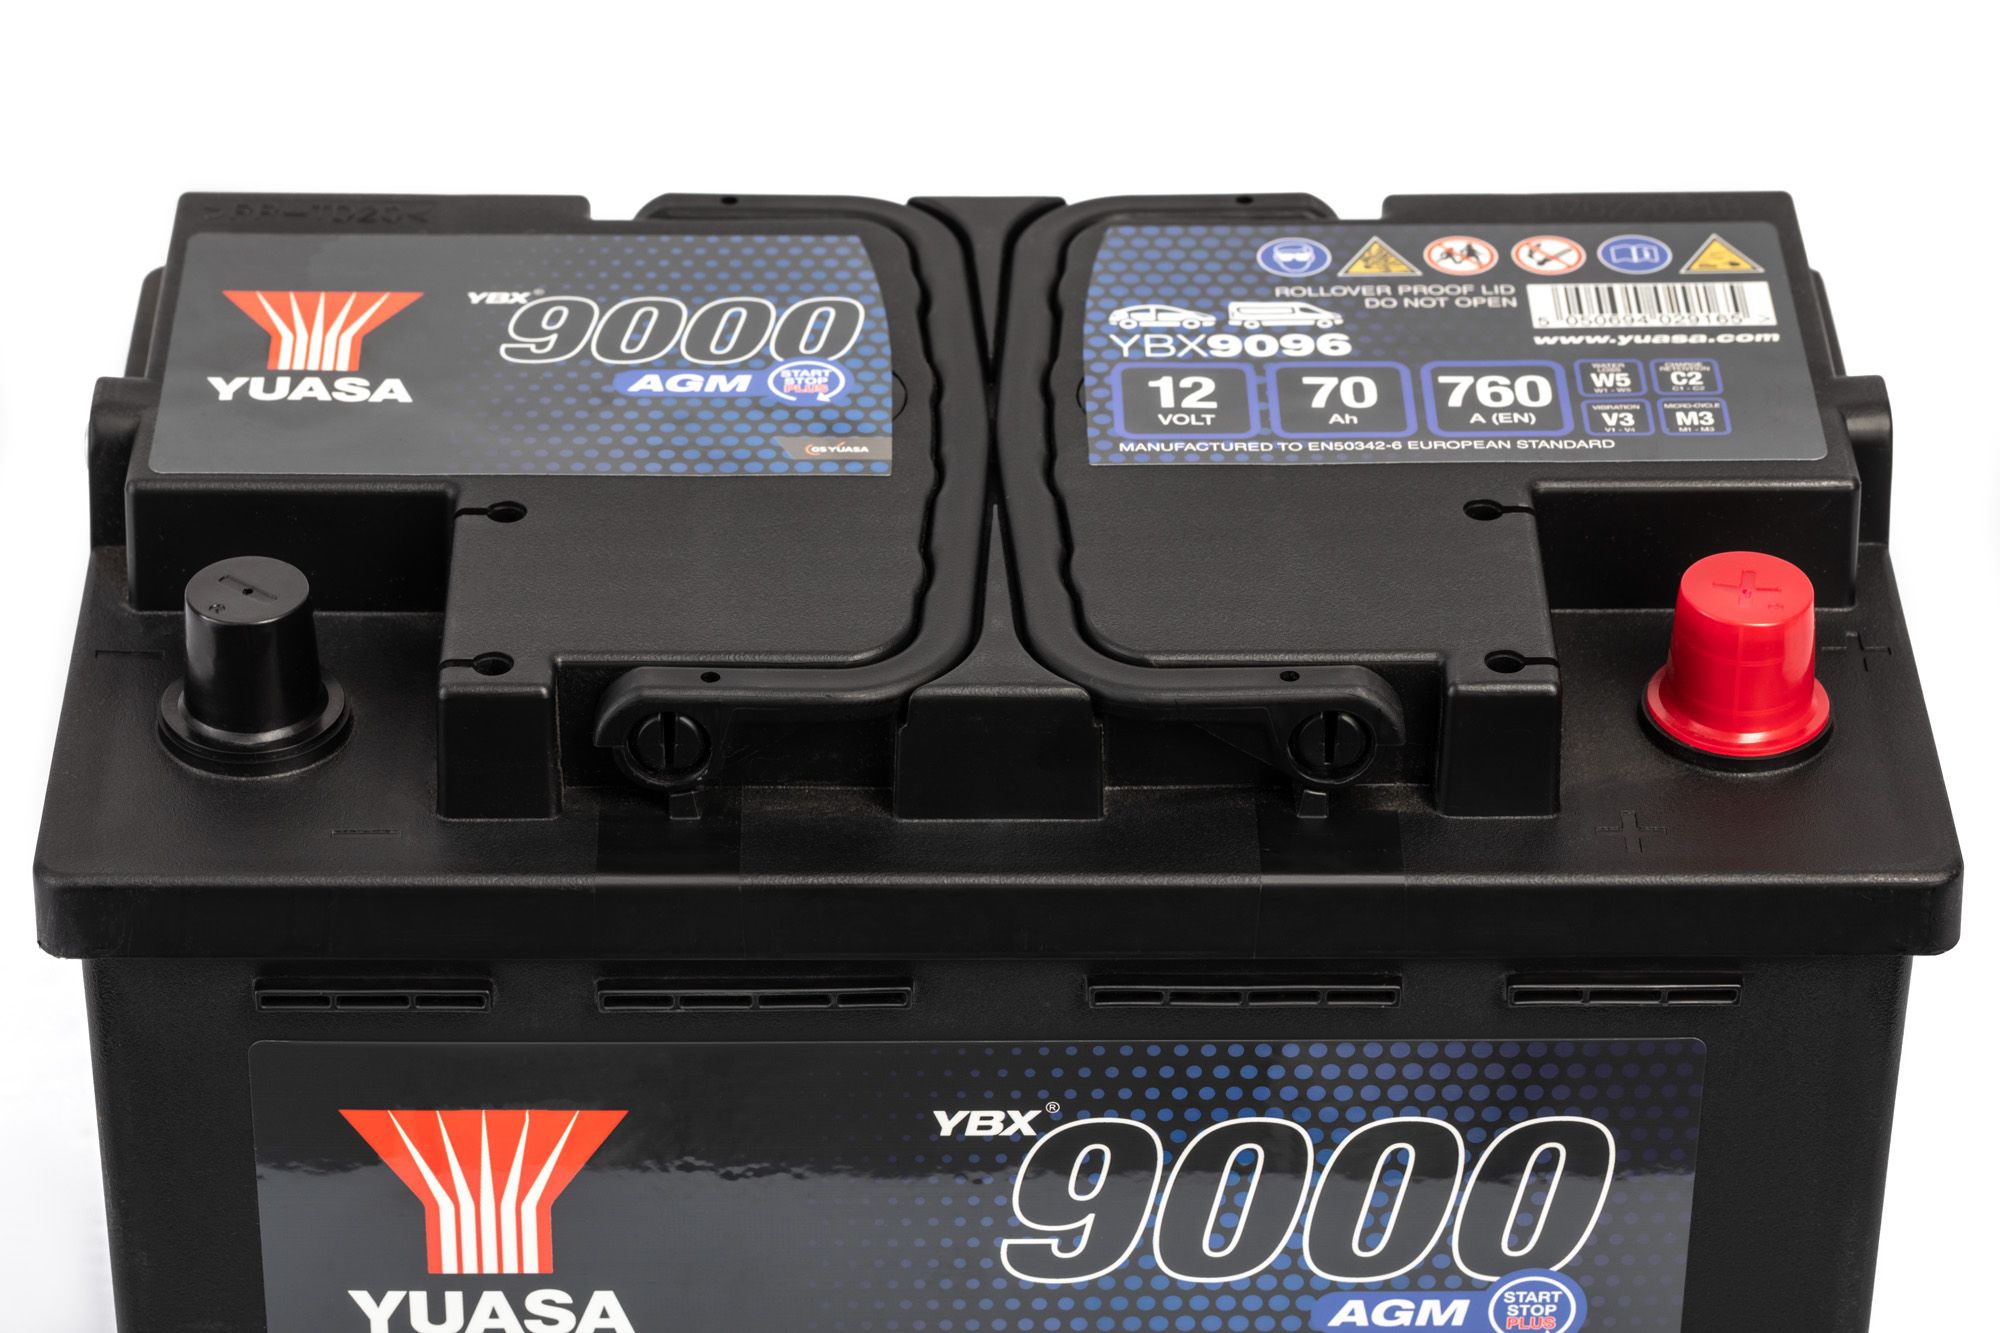 YBX9096 - YBX9000 AGM Batteries - Automotive - Batteries